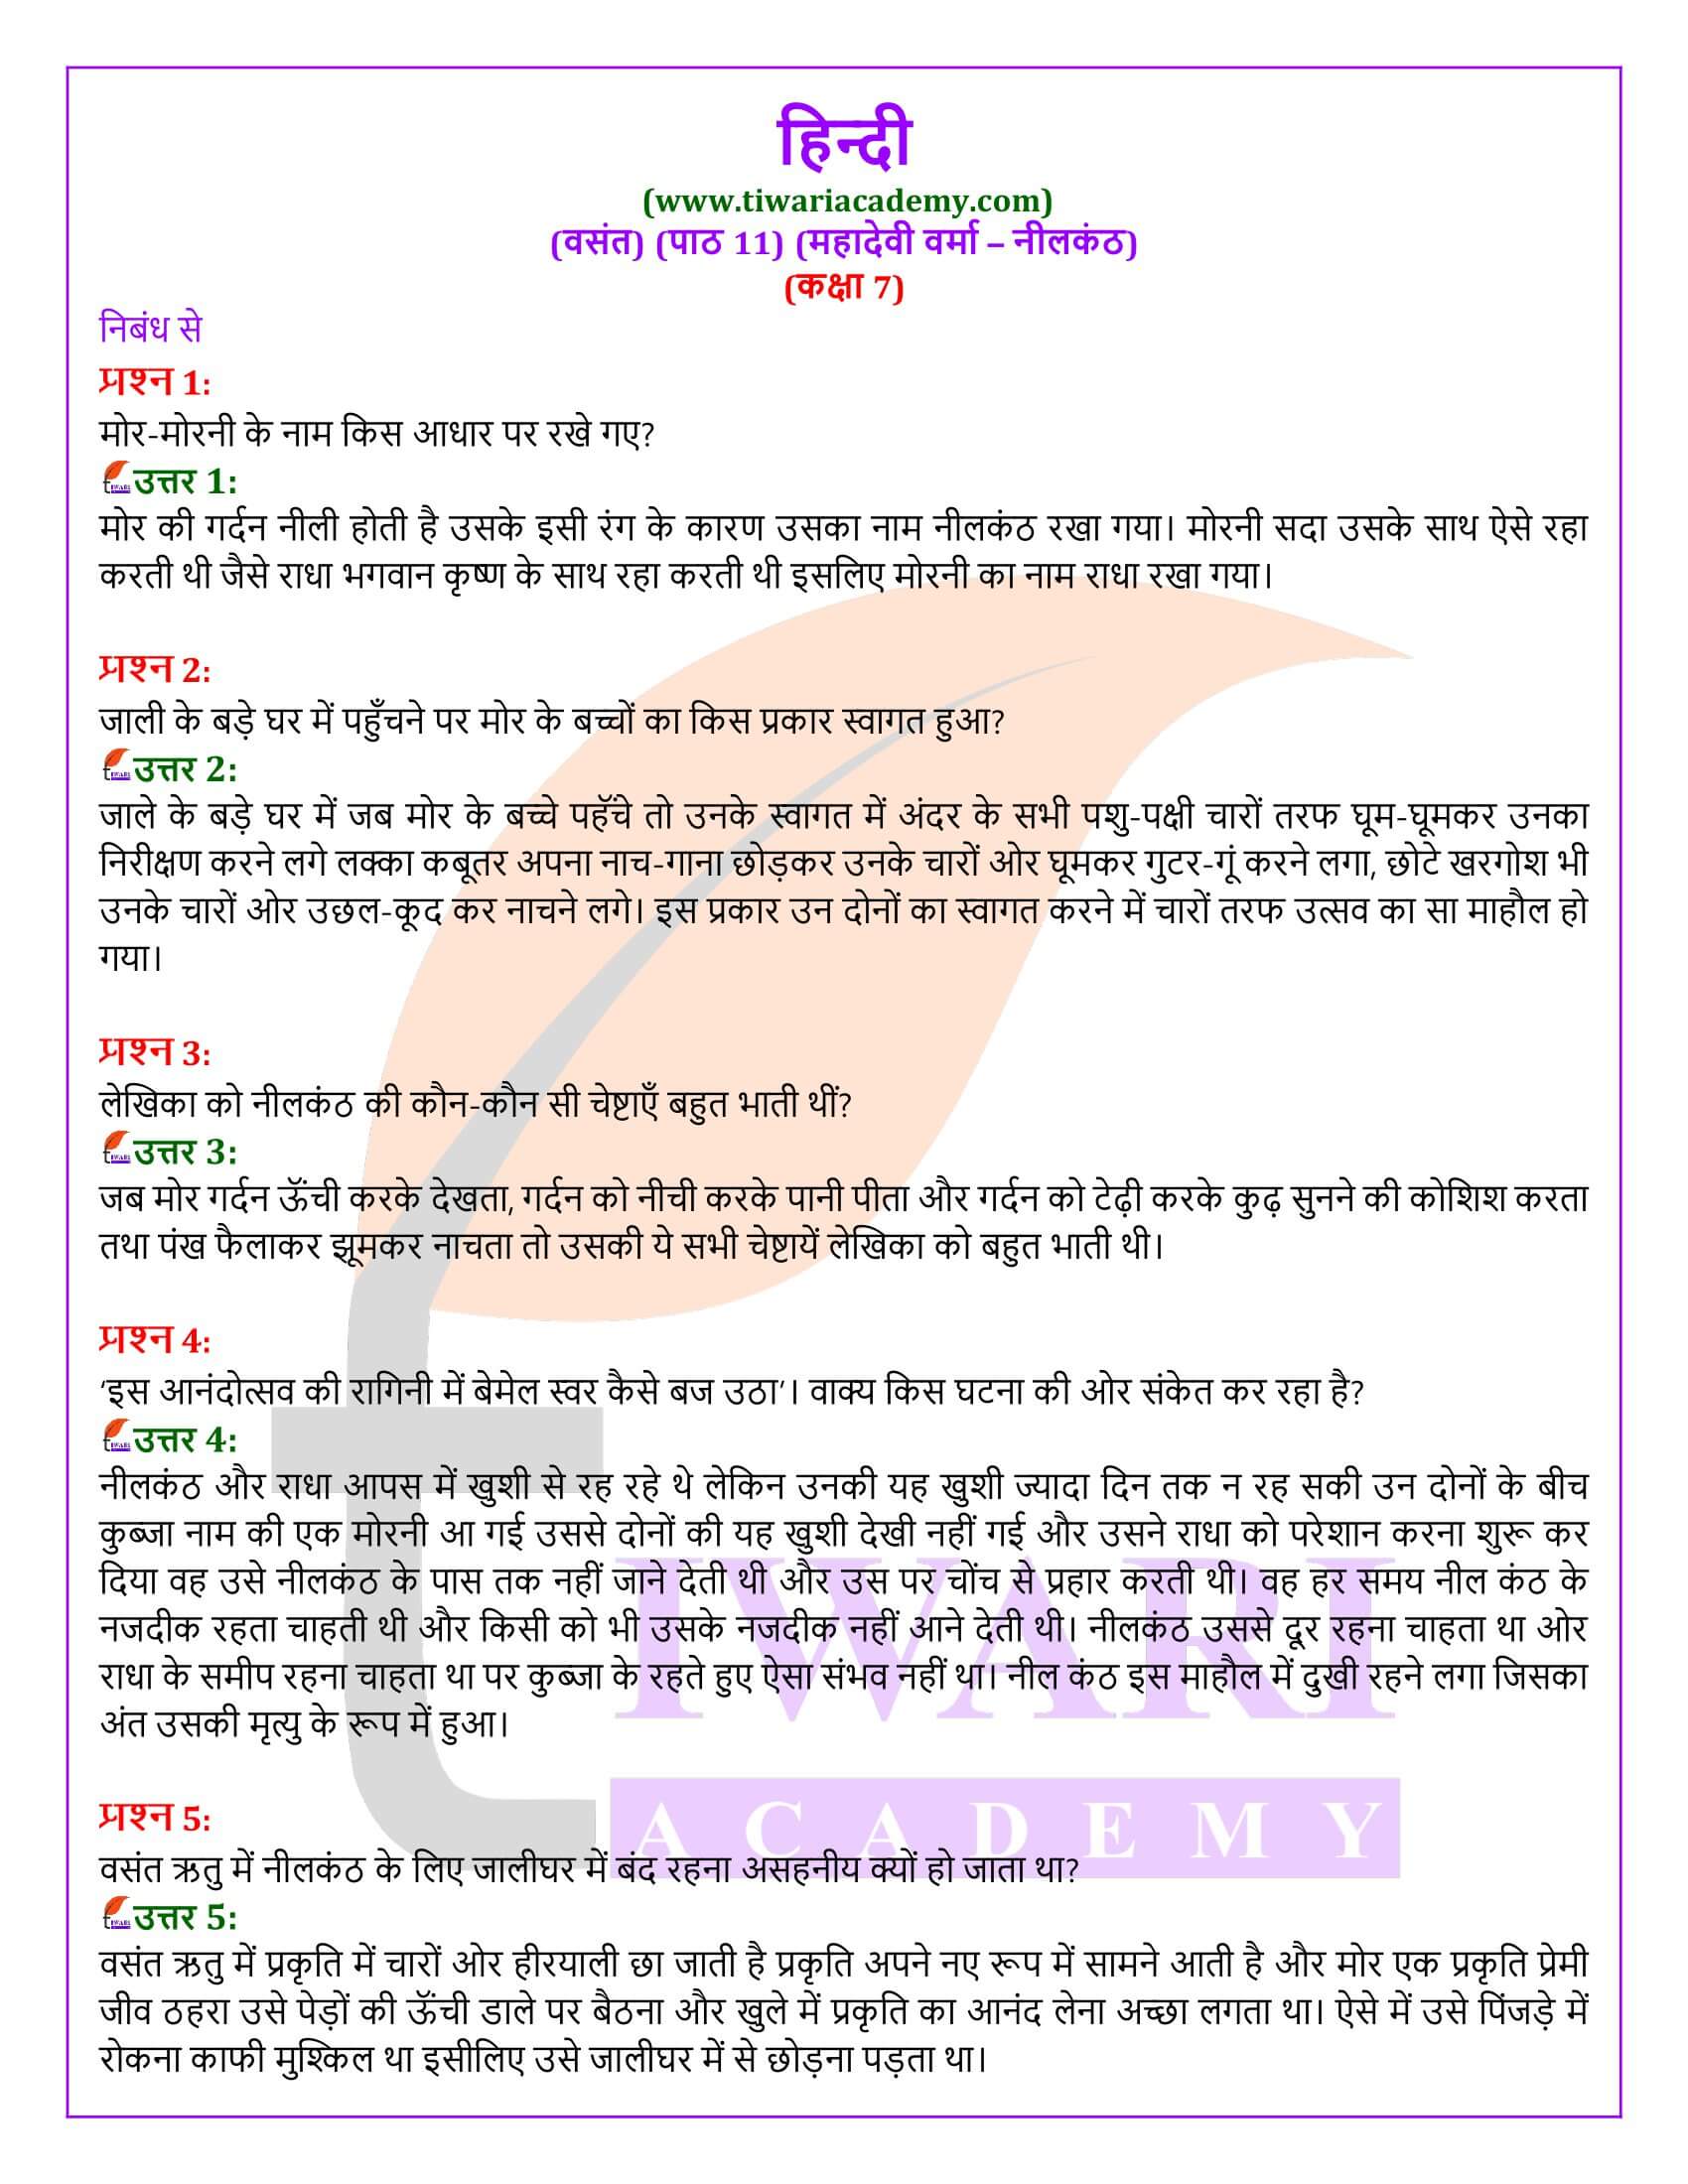 कक्षा 7 हिंदी वसंत अध्याय 11 नीलकंठ के प्रश्न उत्तर